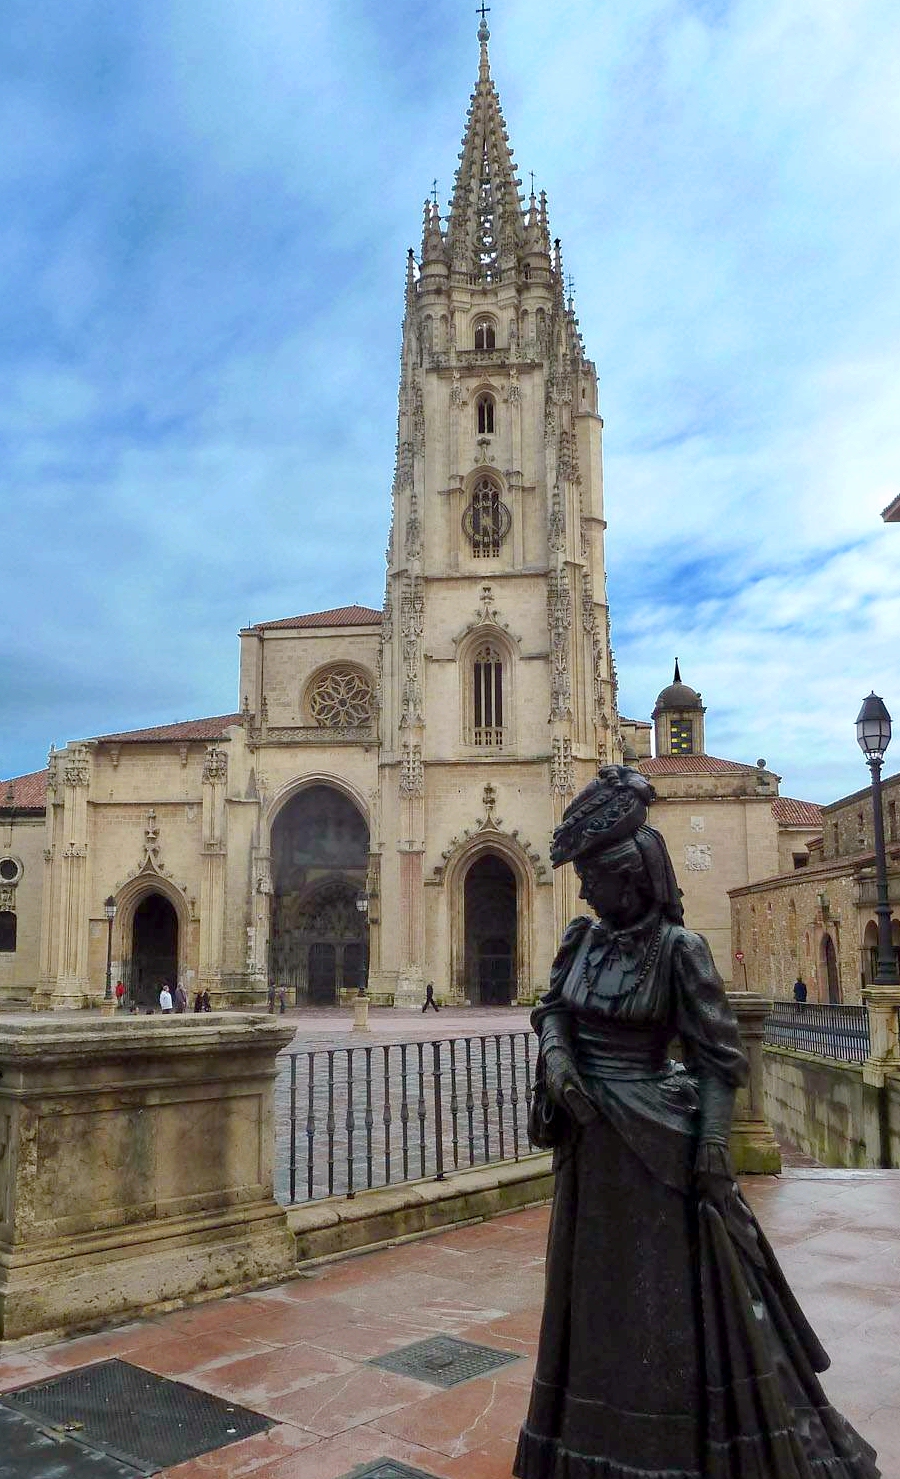 Catedral_de_Oviedo_y_escultura_de_La_Regenta.jpg